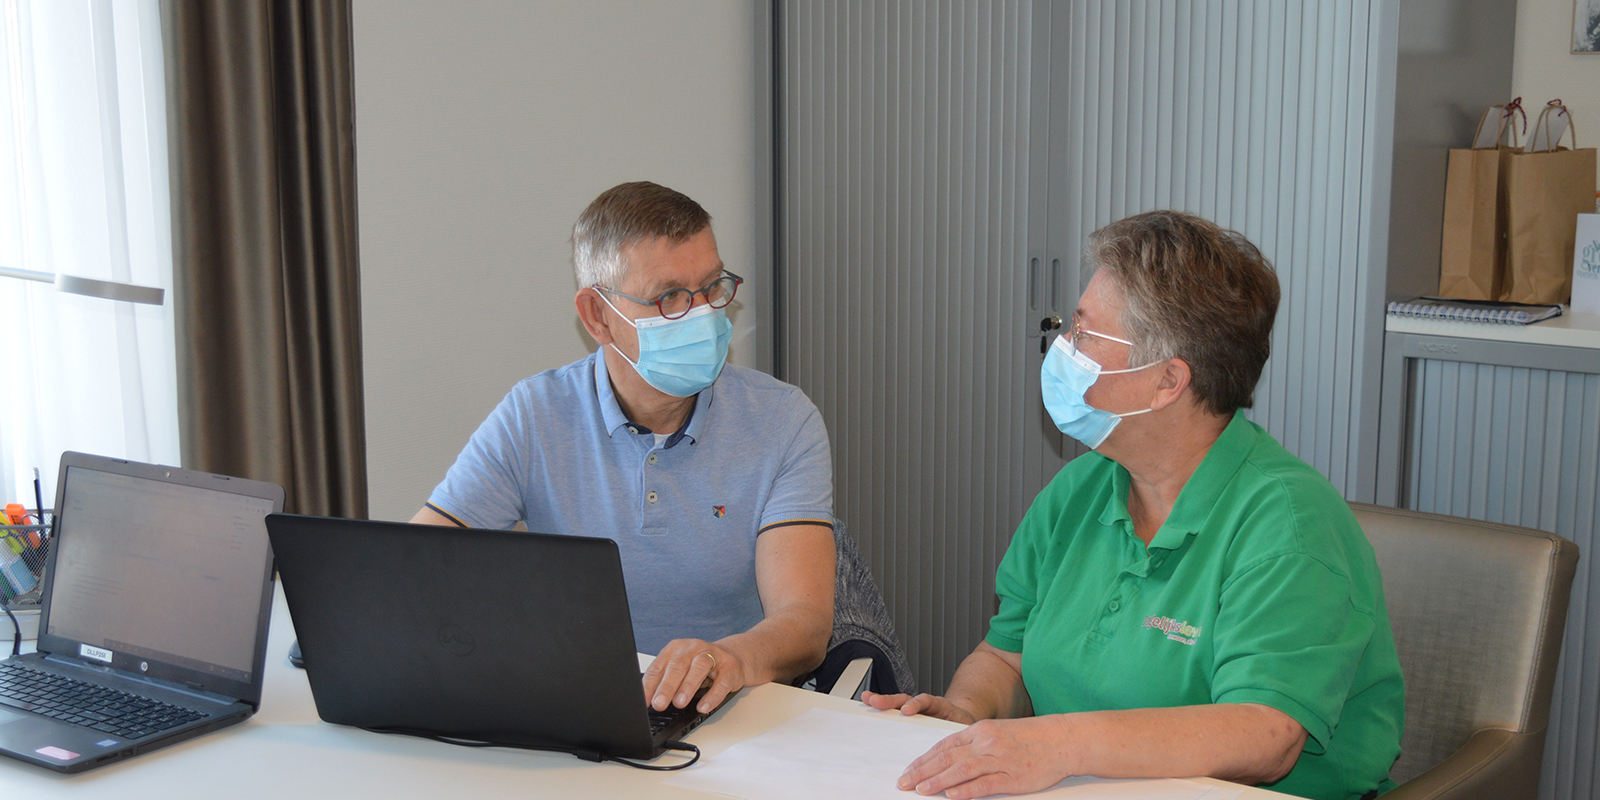 Verpleegkundig specialist Willy Erdhuizen in gesprek met een zorgmedewerker, samen aan een bureau achter een laptop